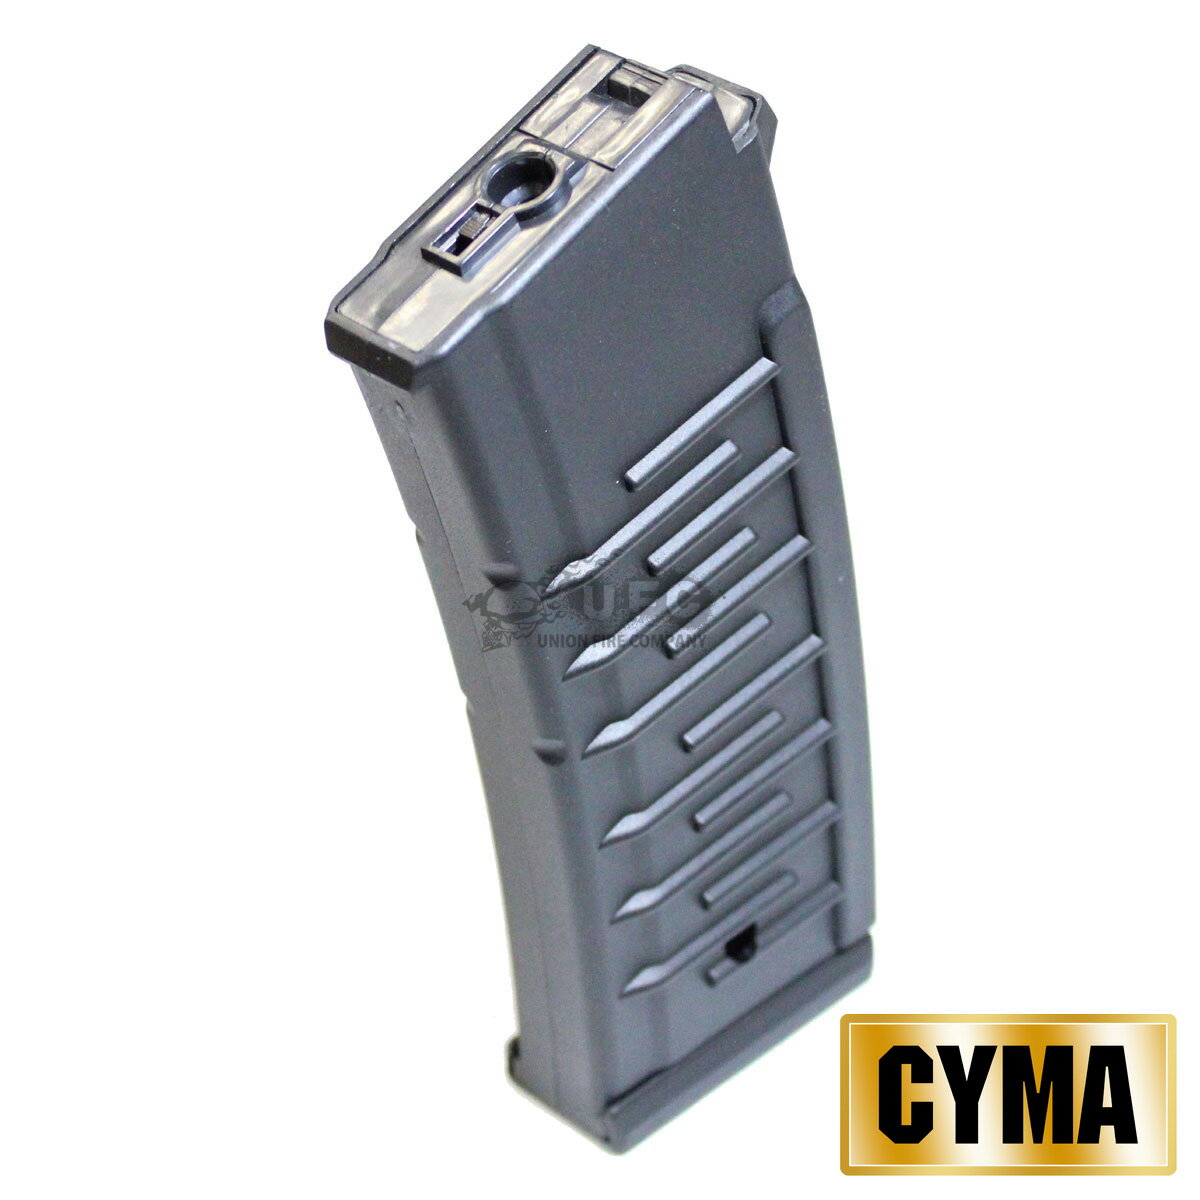 《CYMAフェア》《2月1日再入荷商品》CYMA VSS用330連マガジン 【ST】